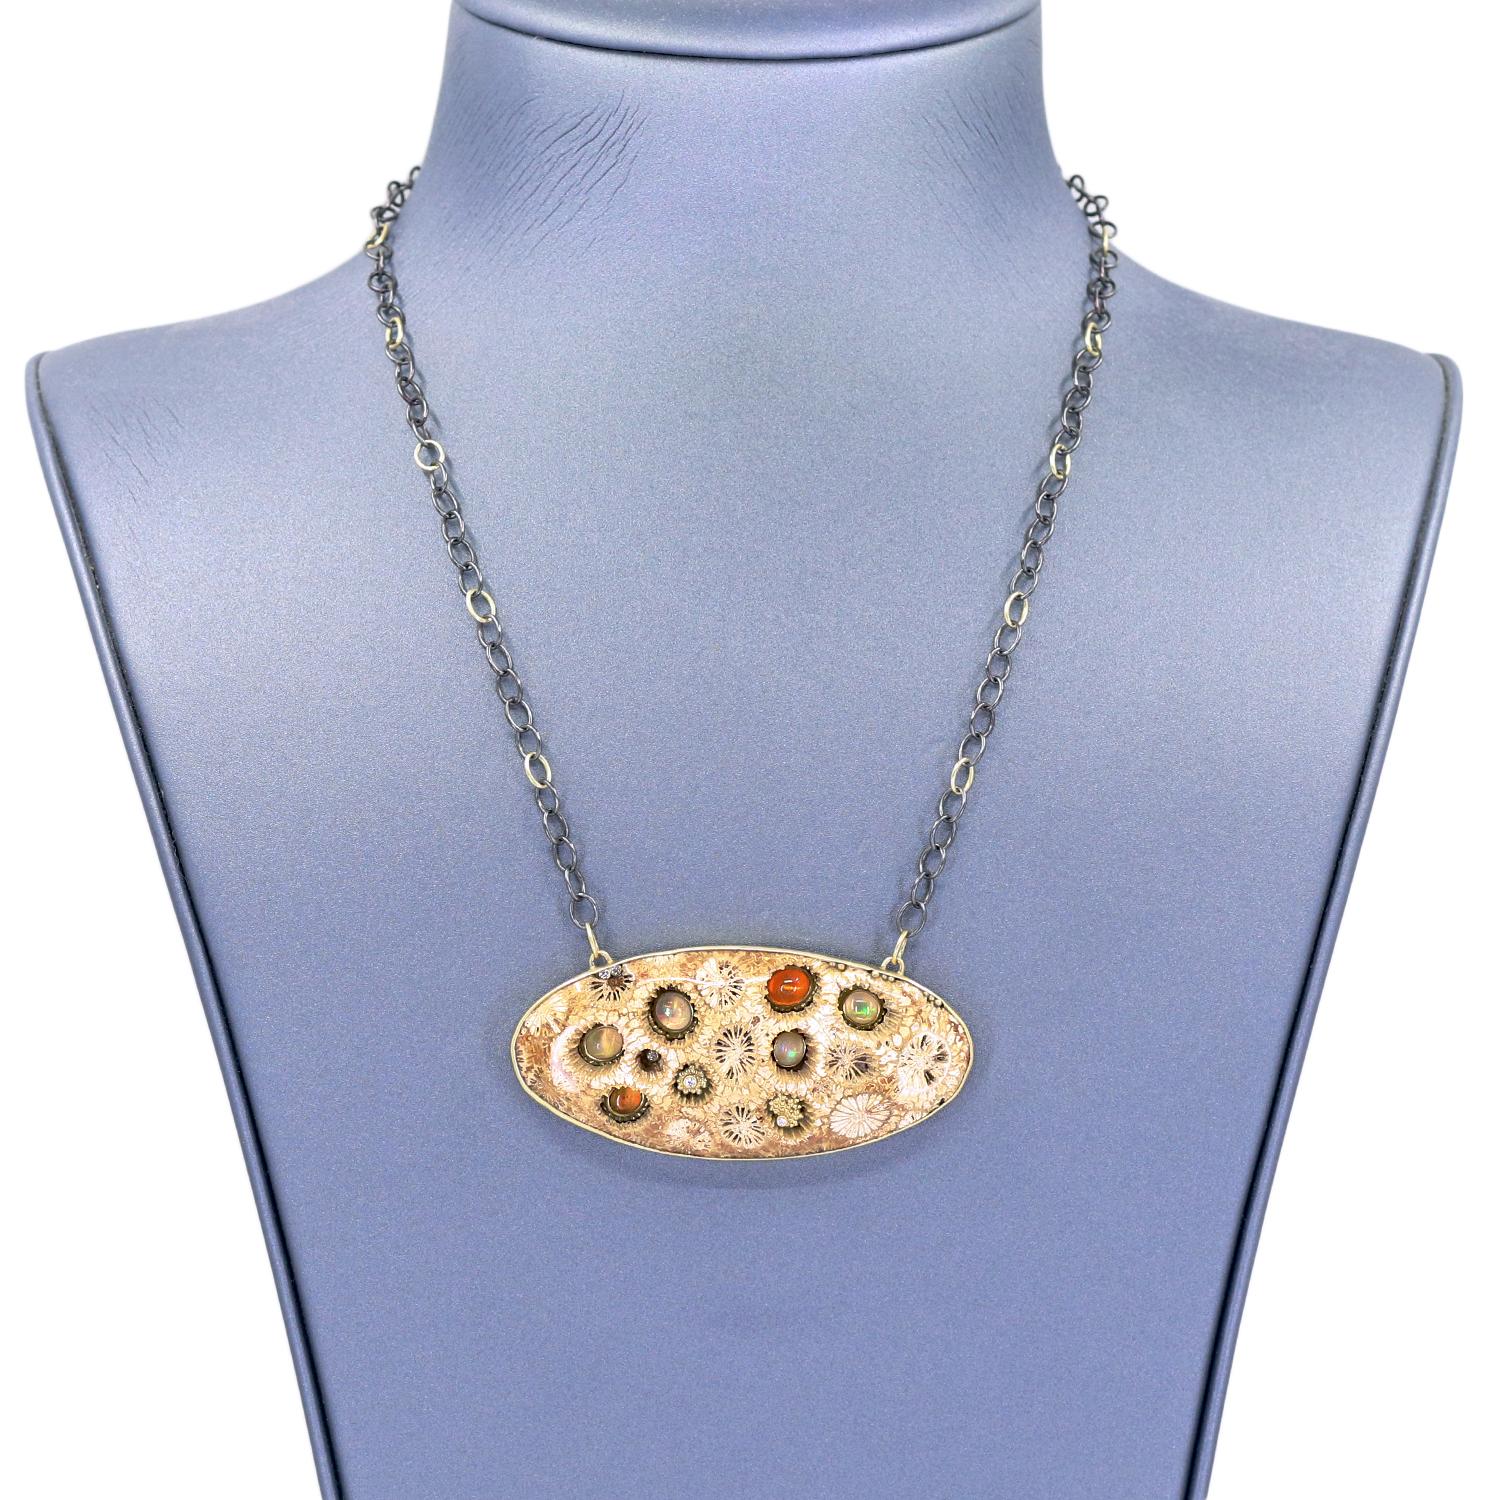 Einzigartige Halskette, handgefertigt von Kothari Designs, mit einer absolut erstaunlichen 2,5 Zoll breiten, natürlichen, versteinerten Koralle, die mit verschiedenen feurigen orangefarbenen und weißen mexikanischen Feueropal-Cabochons und runden